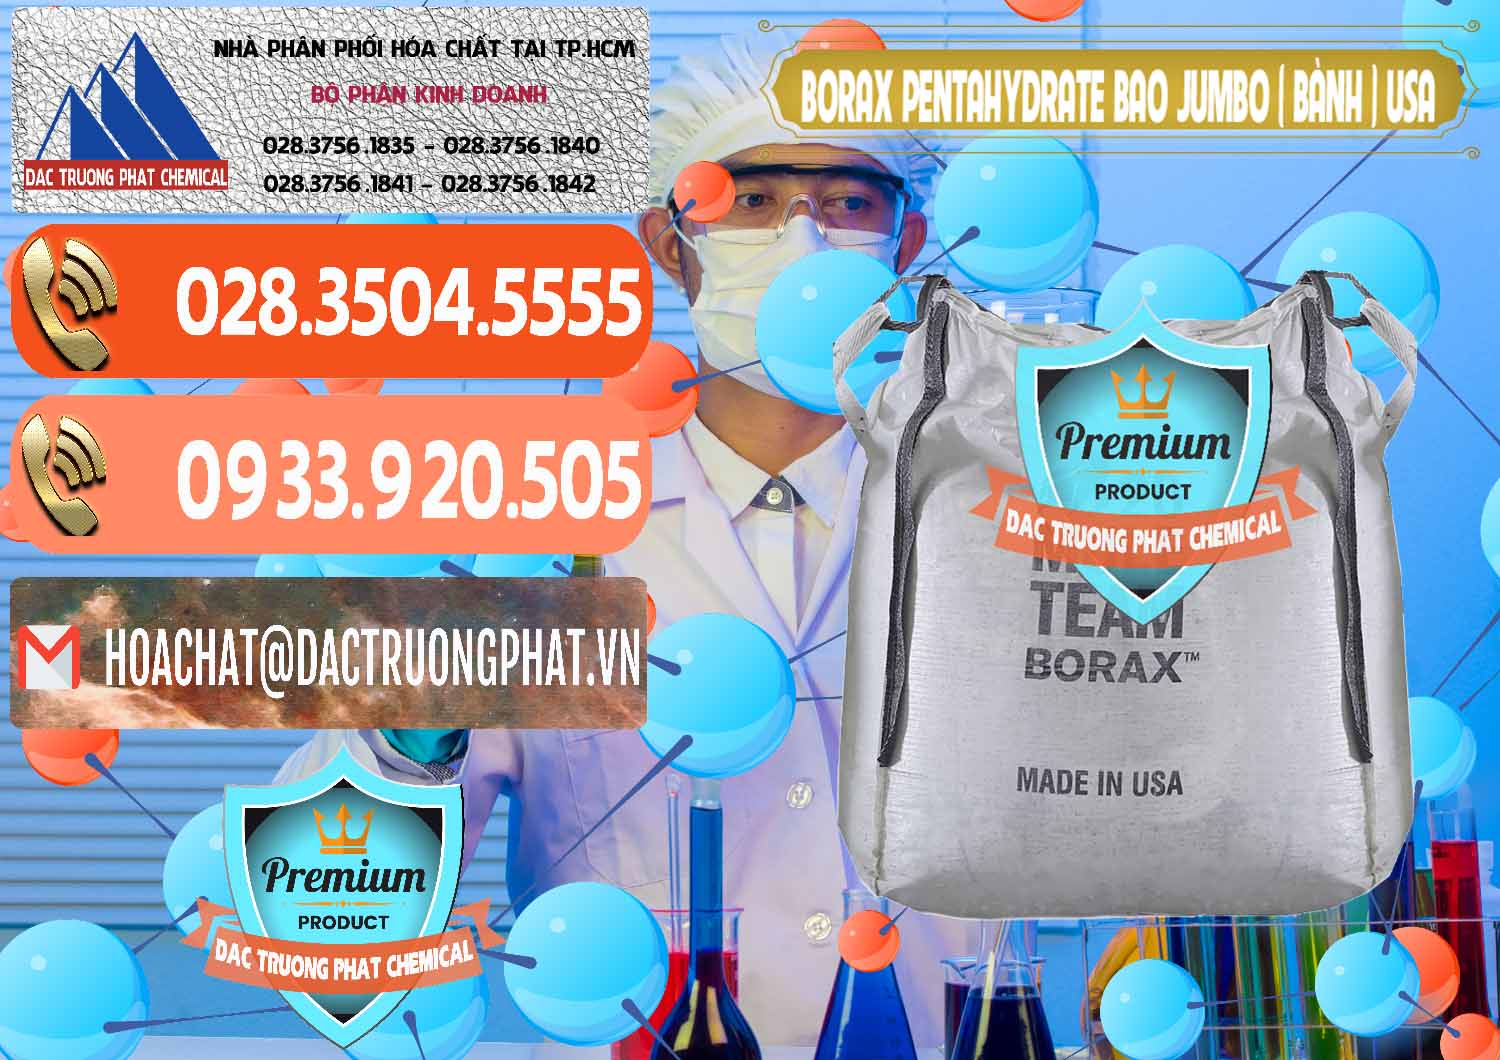 Phân phối - bán Borax Pentahydrate Bao Jumbo ( Bành ) Mule 20 Team Mỹ Usa - 0278 - Chuyên bán - cung cấp hóa chất tại TP.HCM - hoachatmientay.com